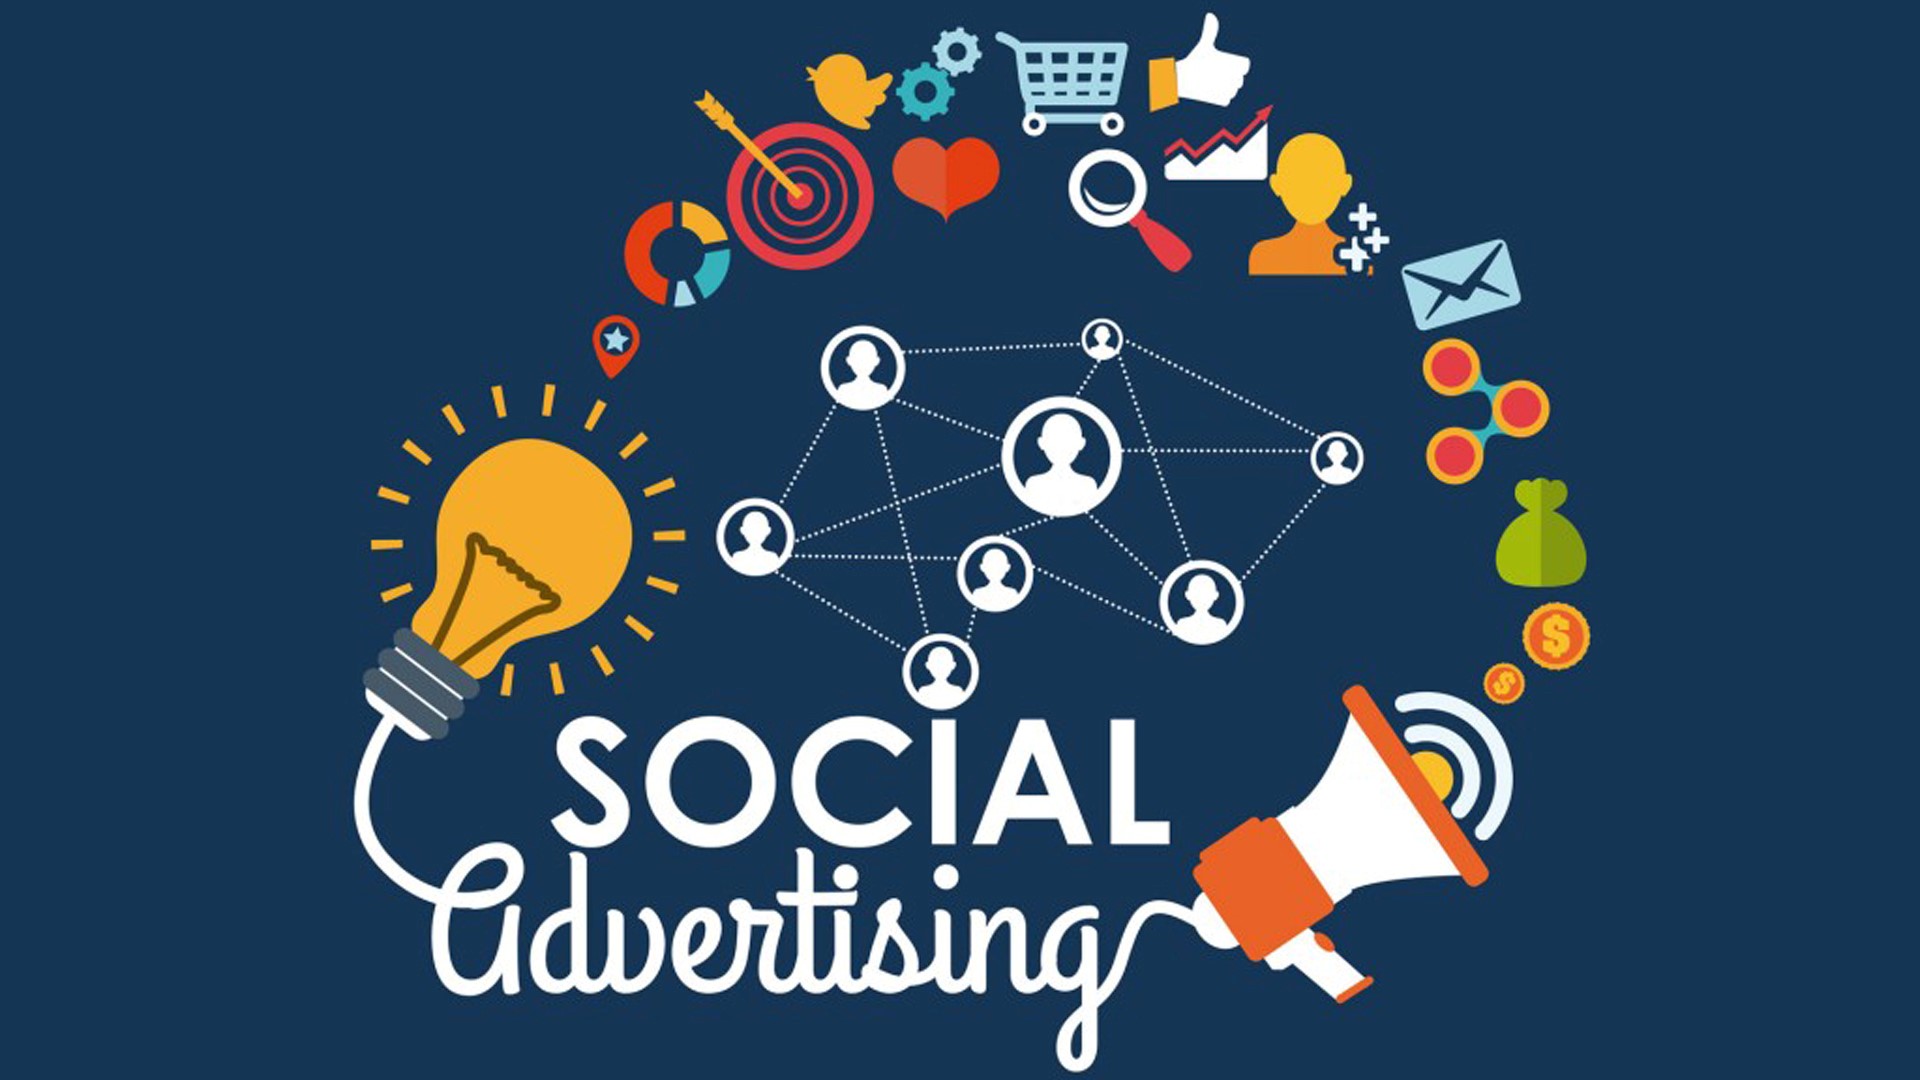 Advertising media is. Social advertising. Social Media advertising. Advertising on social Media. Social Advert.